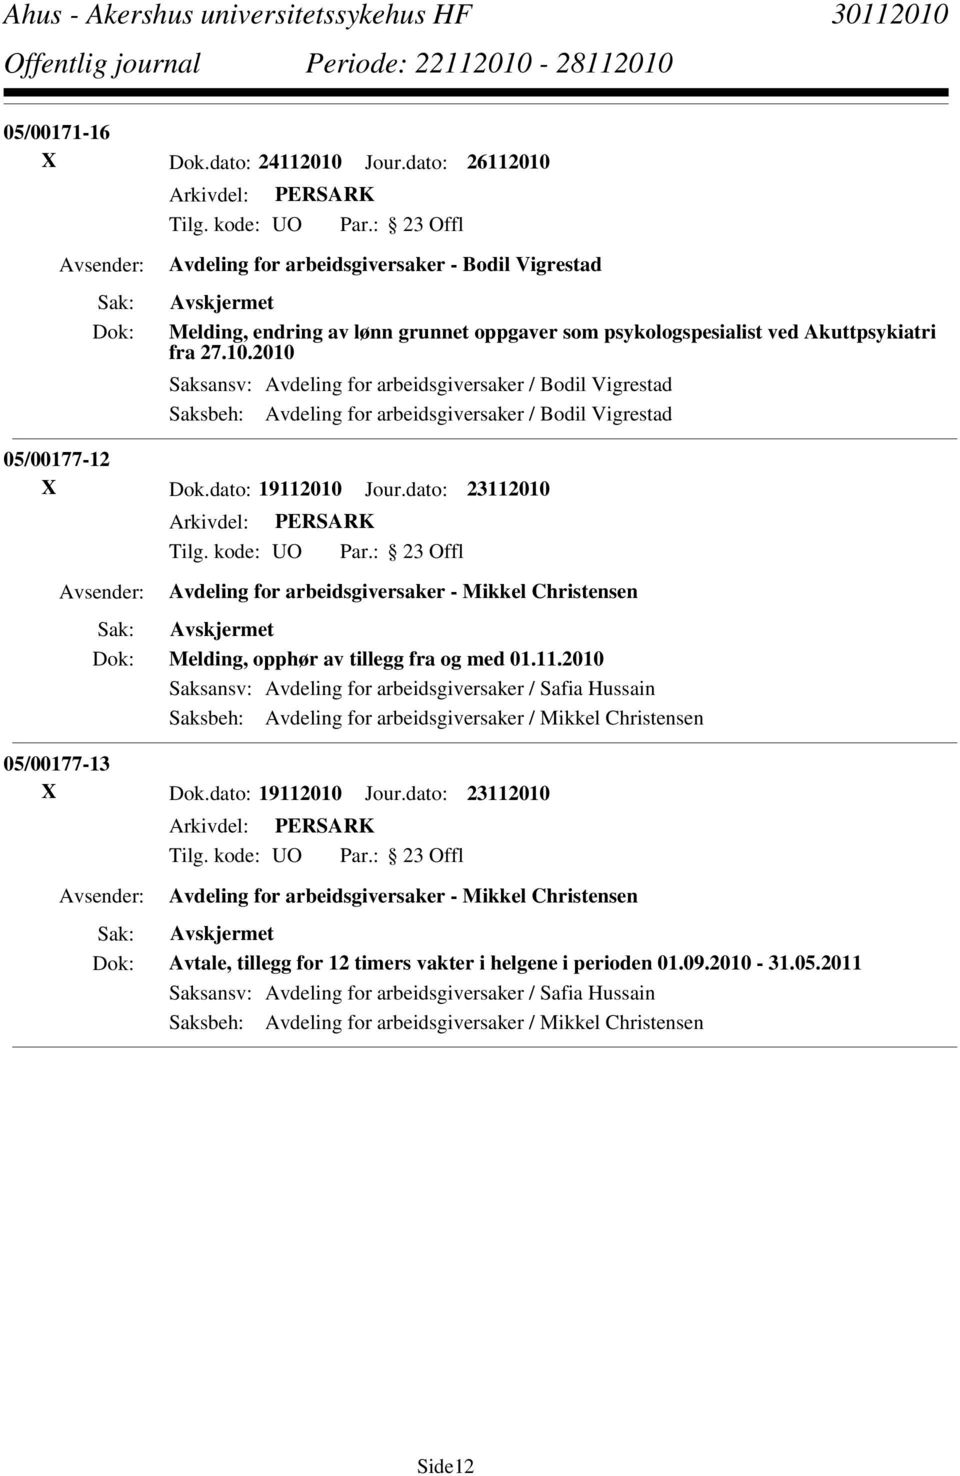 dato: 19112010 Jour.dato: 23112010 Avdeling for arbeidsgiversaker - Mikkel Christensen Avtale, tillegg for 12 timers vakter i helgene i perioden 01.09.2010-31.05.